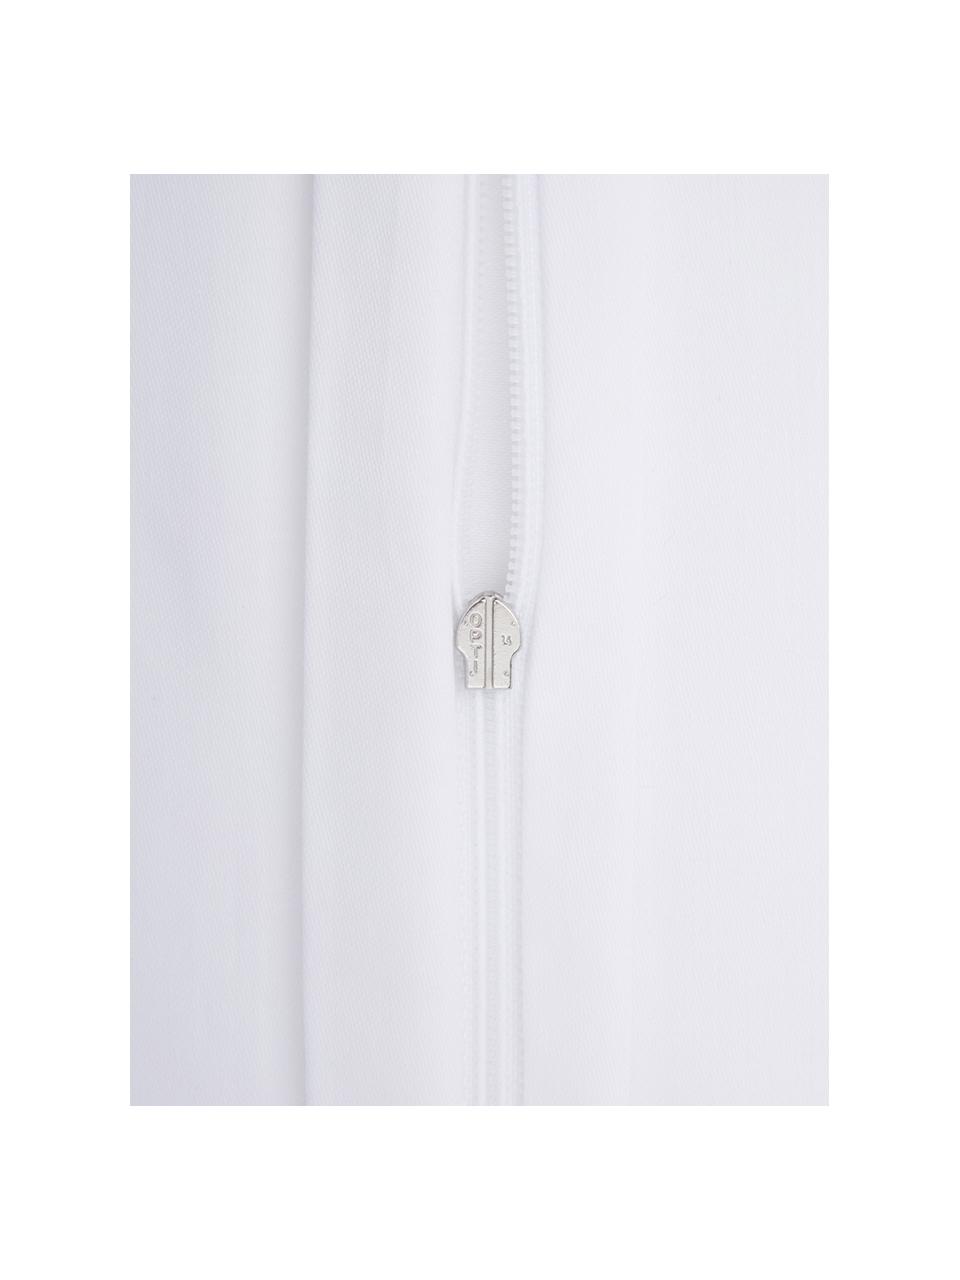 Mako-Satin Bettwäsche Marco in Weiß, Webart: Mako-Satin Fadendichte 21, Weiß, 155 x 220 cm + 1 Kissen 80 x 80 cm